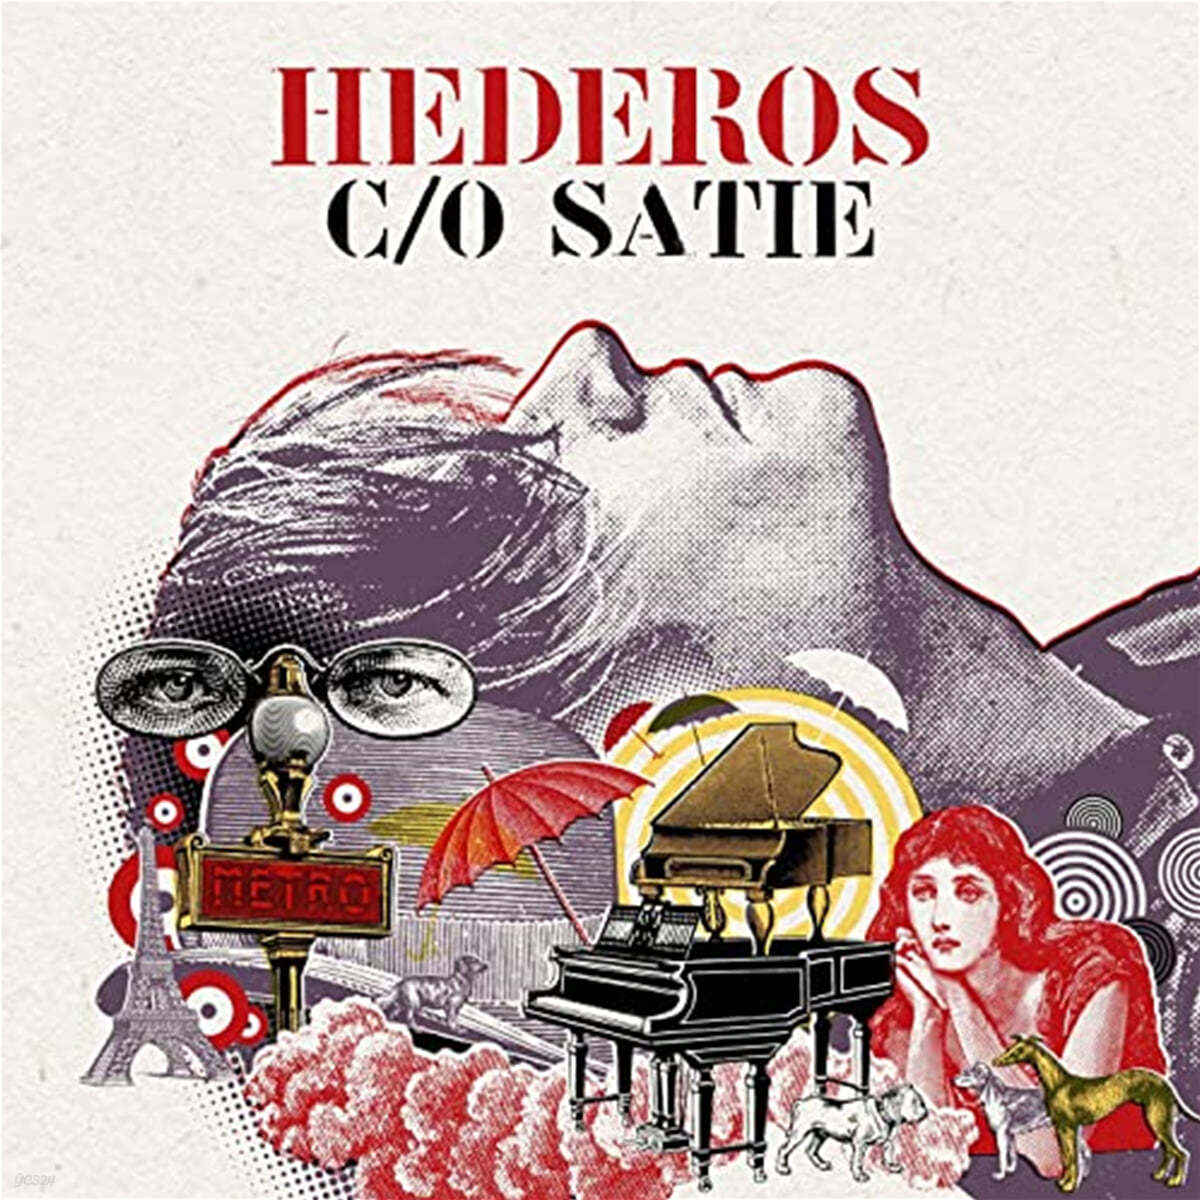 Martin hederos 재즈로 연주하는 에릭 사티 모음집 (Hederos C/O Satie) [LP]